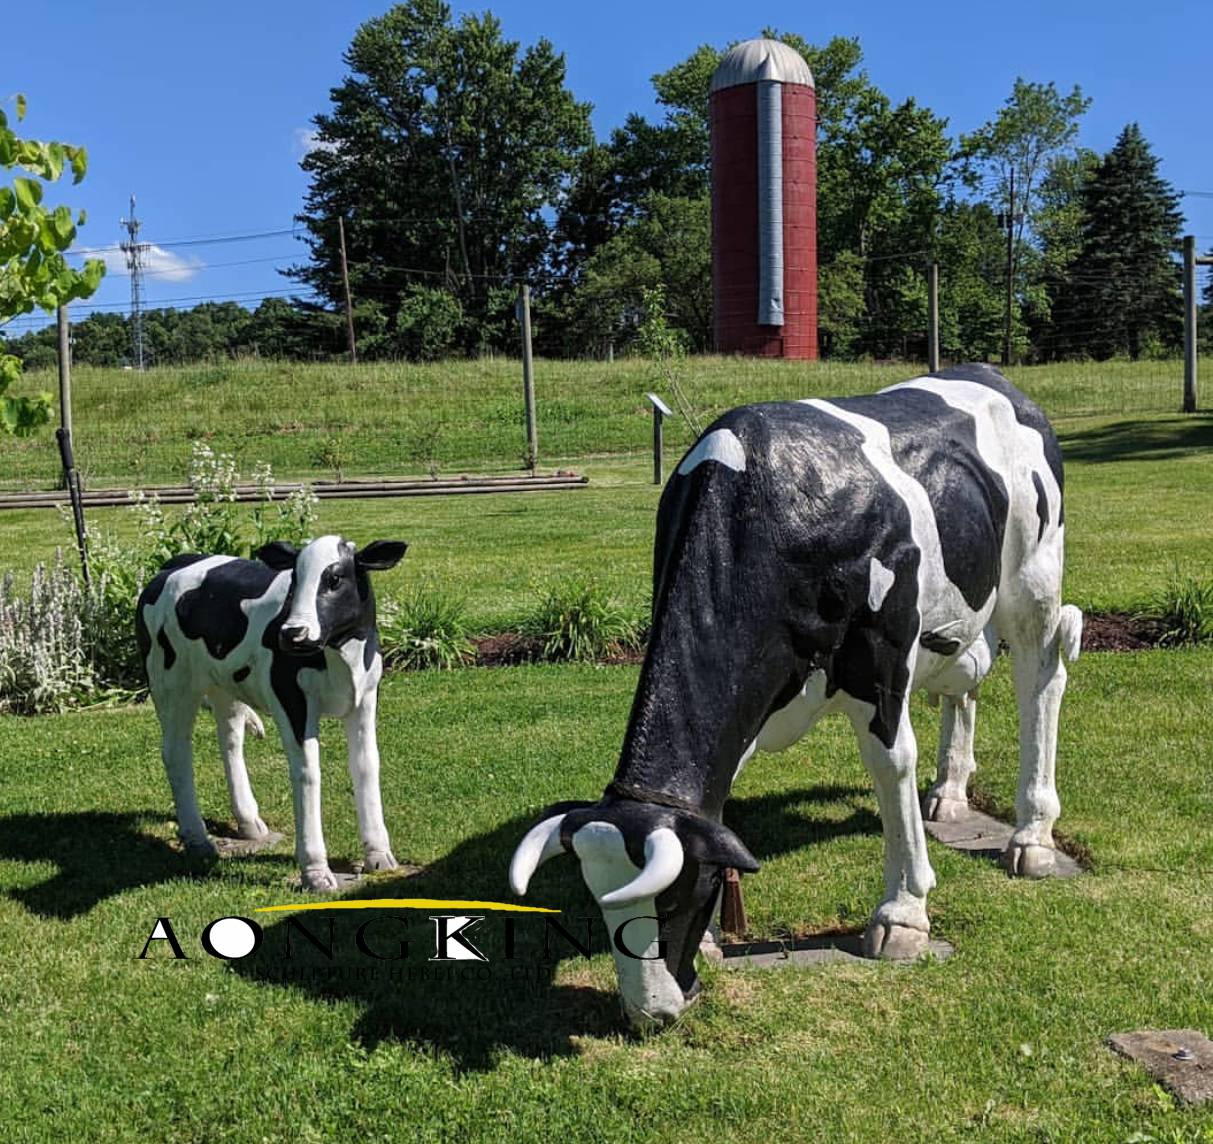 Cow sculptures in fiberglass